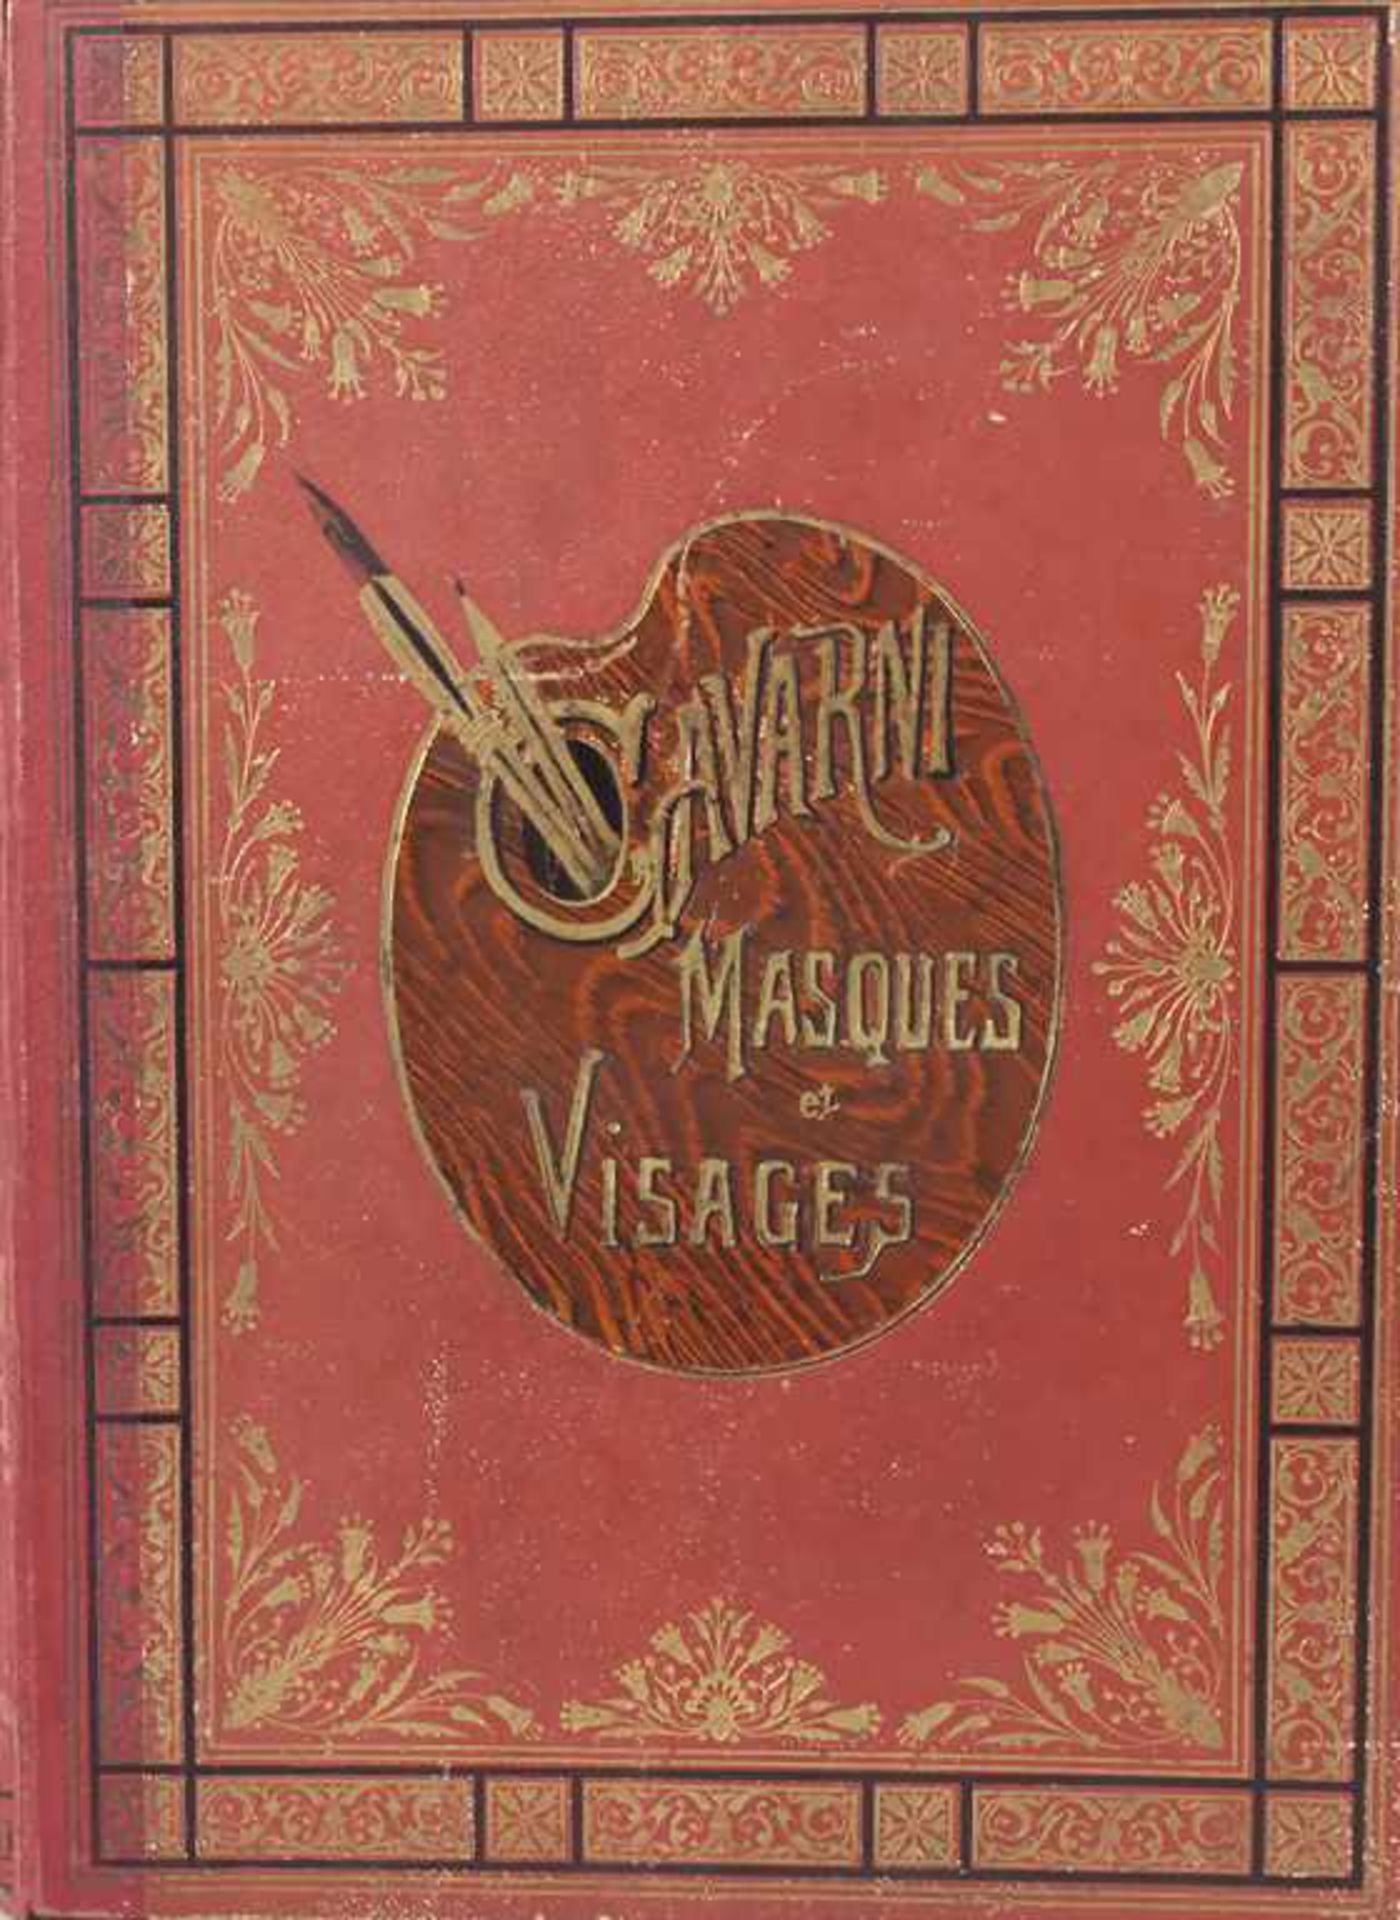 Gavarni: 'Masques et Visages', um 1860Umfang: zahlreiche Lithografien, Vorwort von S.-